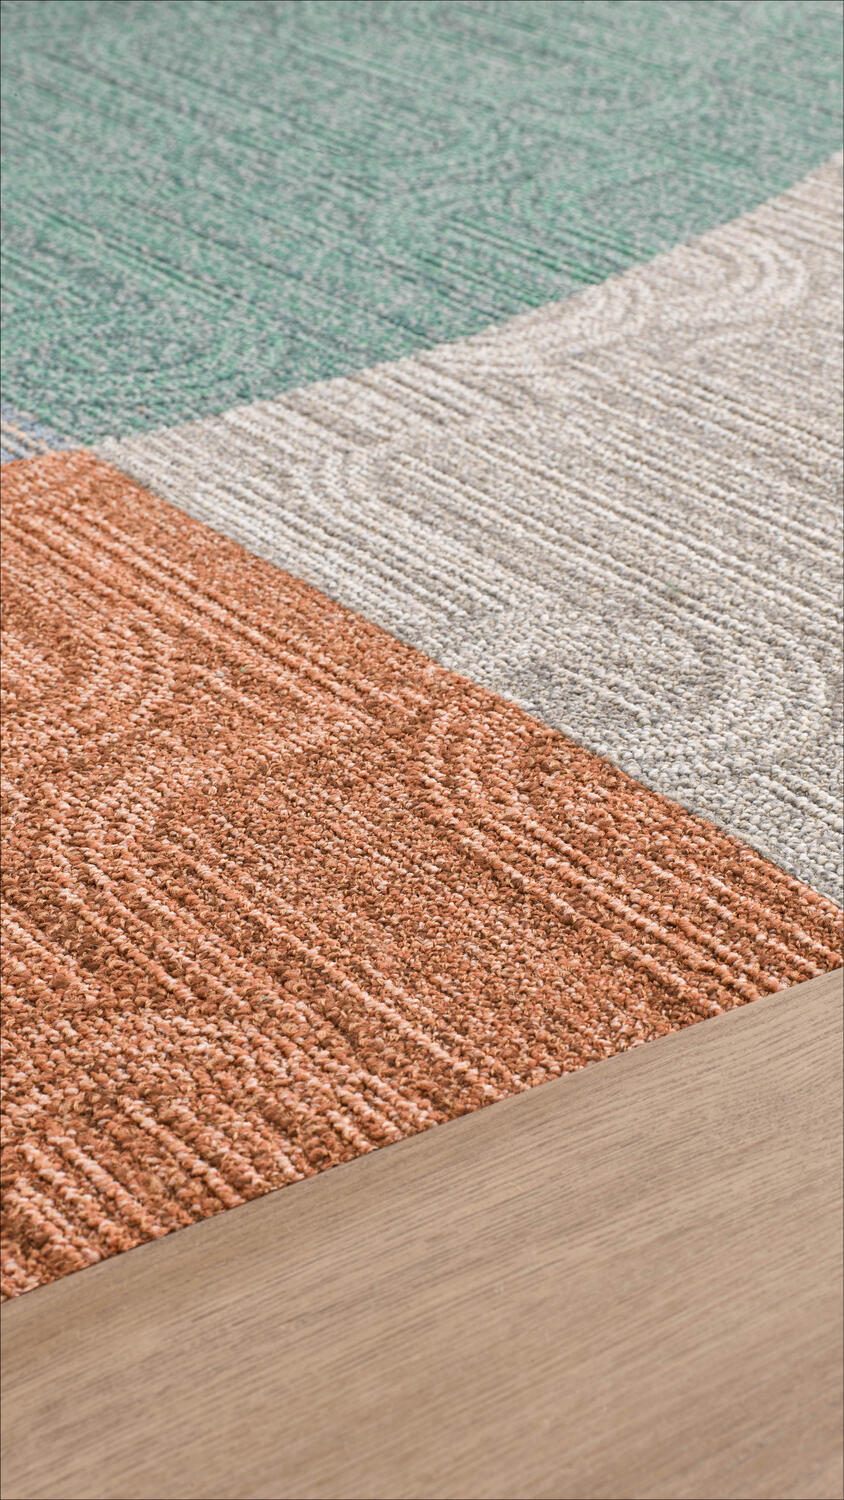 Mix of Tarkett sustainable carpet tiles and modular vinyl